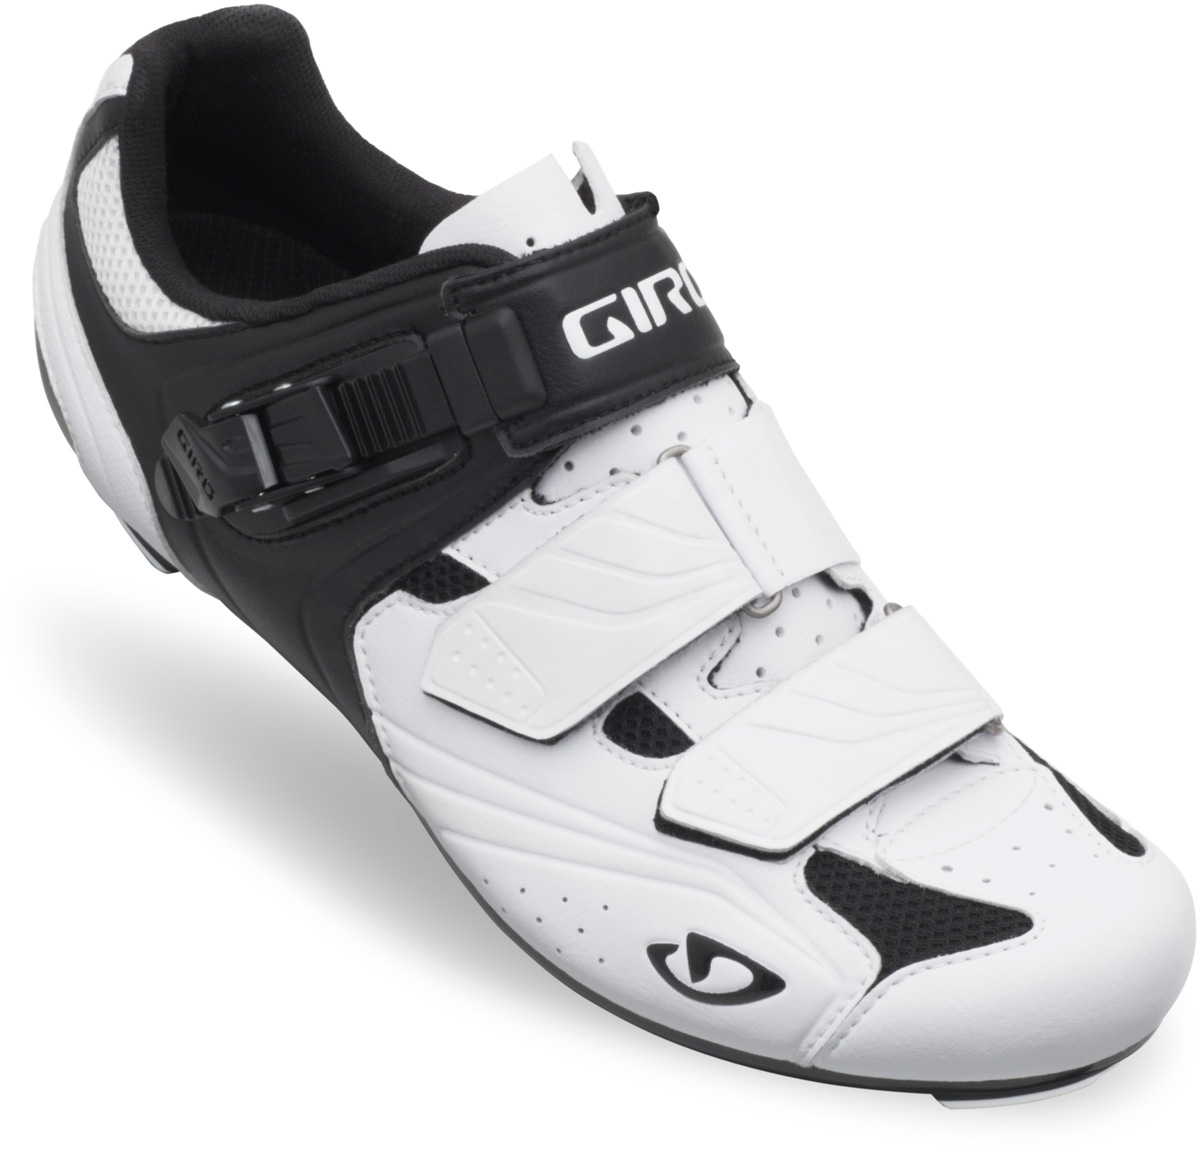 Giro Apeckx Shoes - Serious Cycling